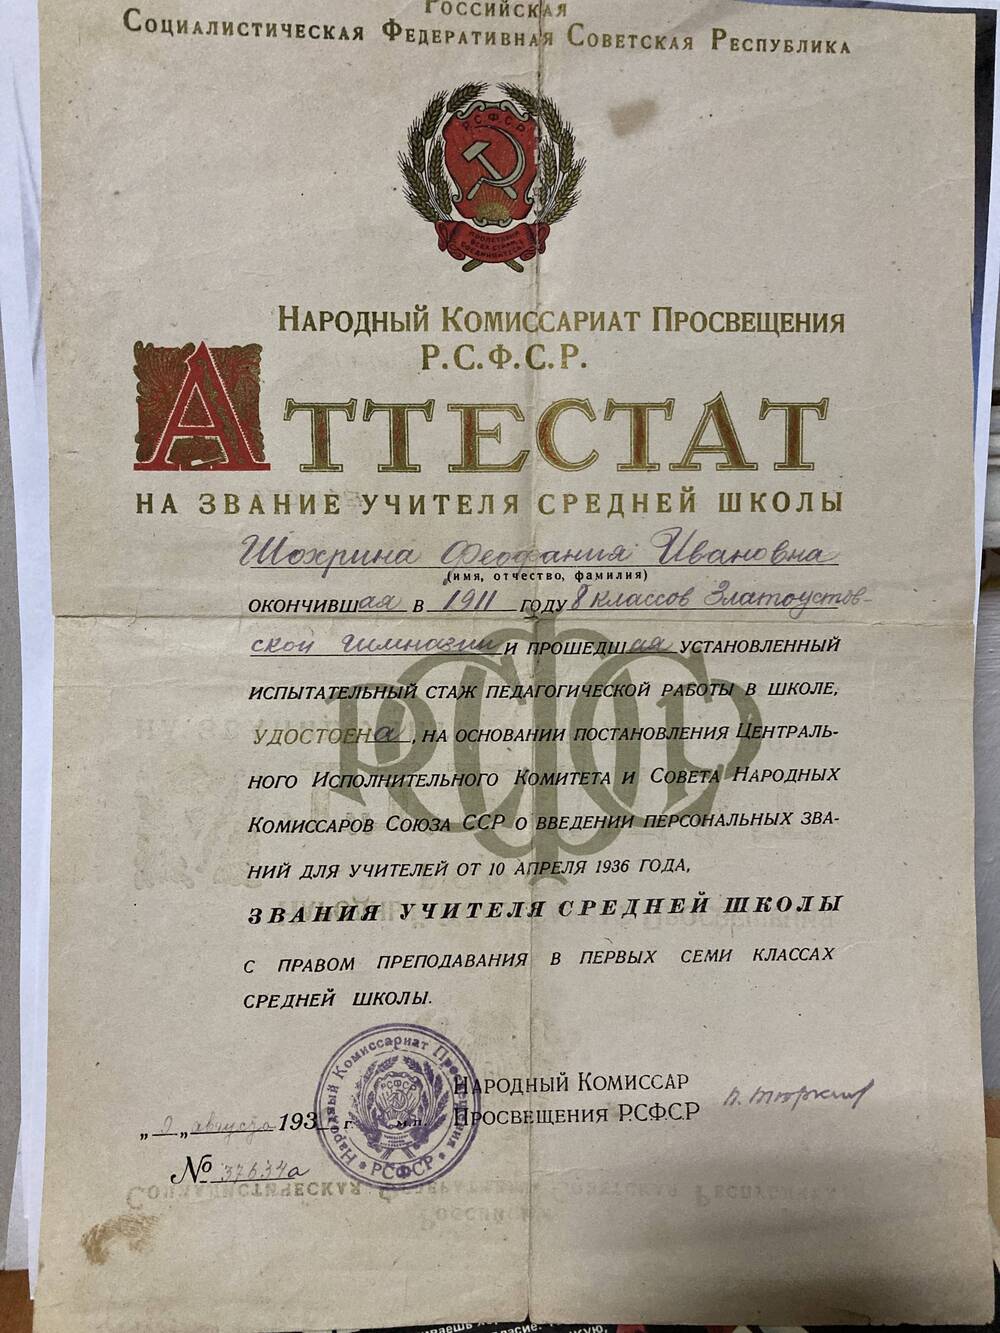 Аттестат на звание учителя средней школы от 9.08.1936 г, выданный Шохриной Феофании Ивановне